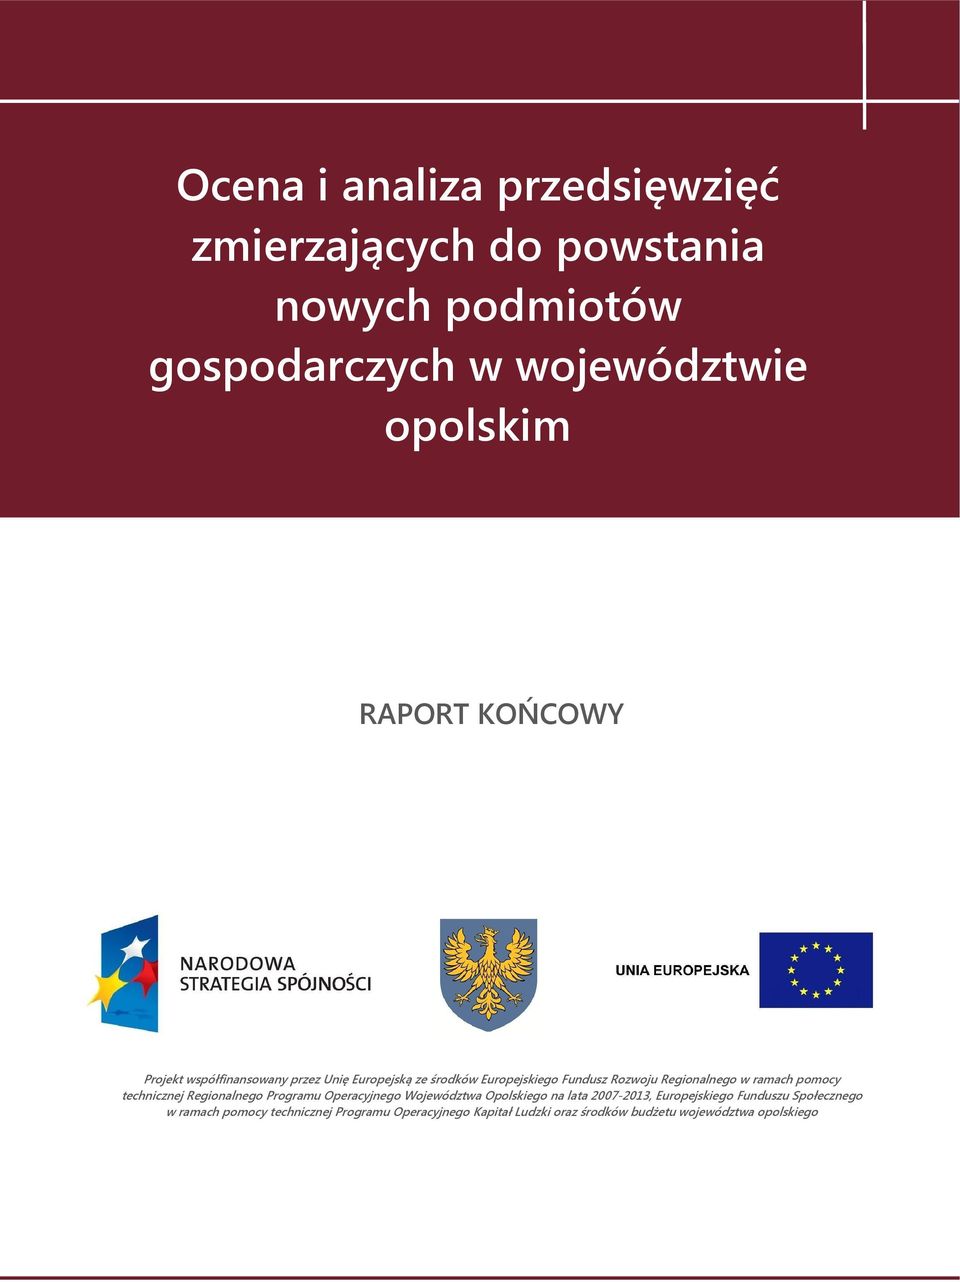 pomocy technicznej Regionalnego Programu Operacyjnego Województwa Opolskiego na lata 2007-2013, Europejskiego